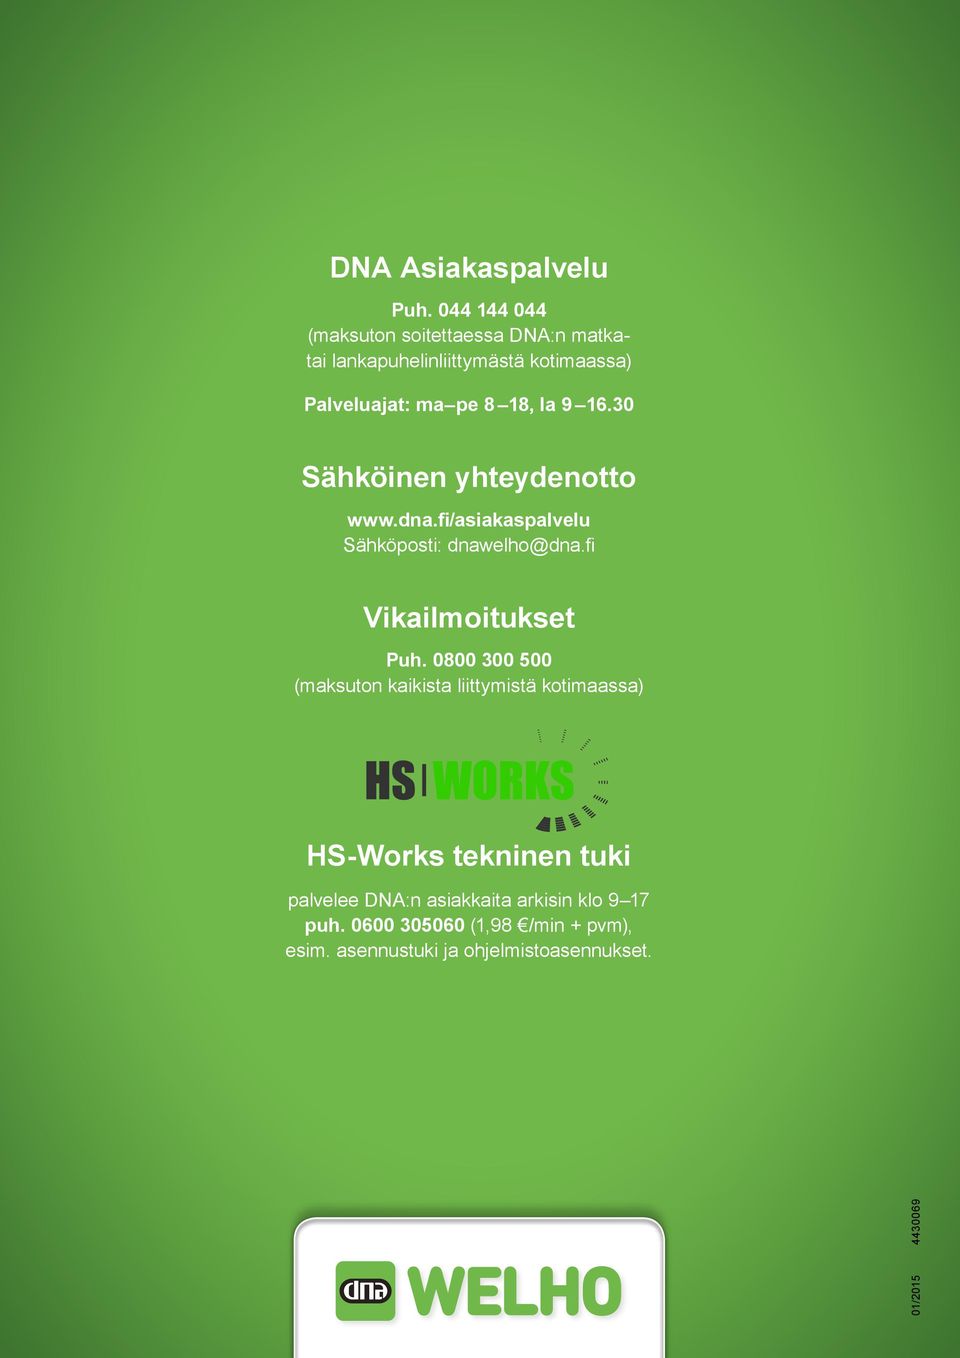 9 16.30 Sähköinen yhteydenotto www.dna.fi/asiakaspalvelu Sähköposti: dnawelho@dna.fi Vikailmoitukset Puh.